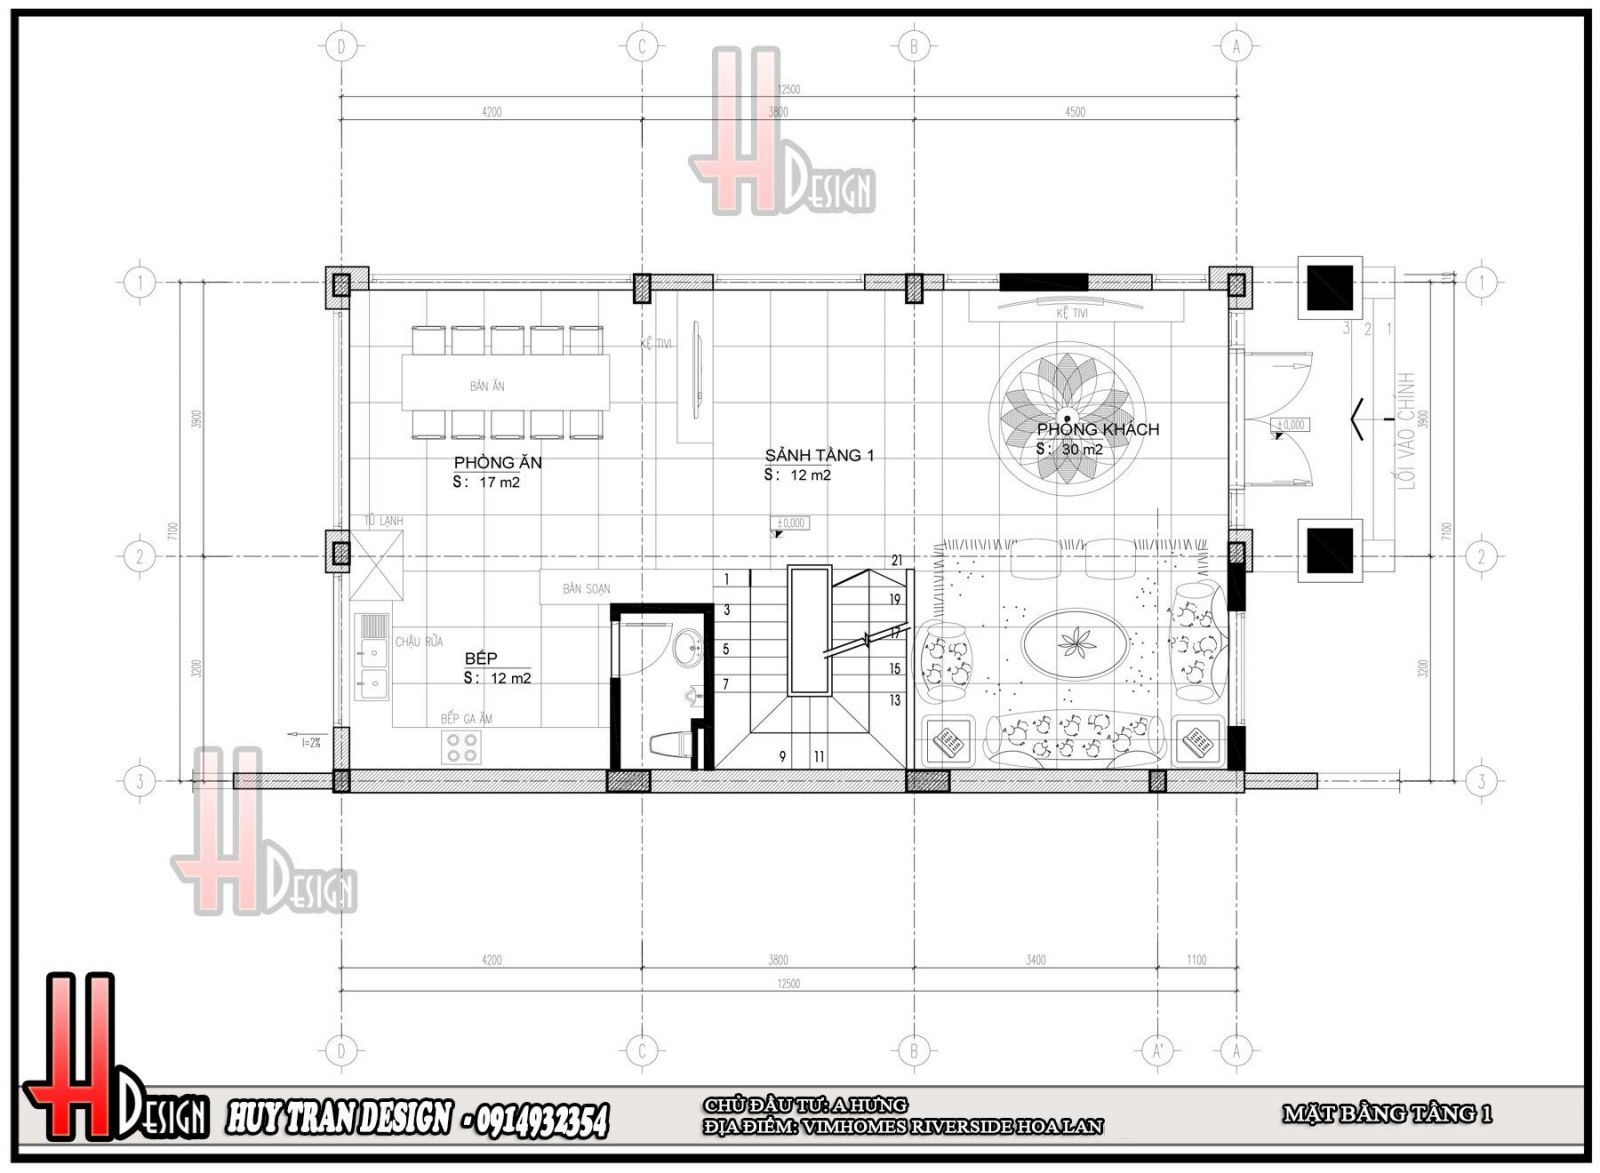 Mẫu thiết kế mặt bằng tầng 1 biệt thự Hoa Lan- Vinhomes Riverside- Long Biên- Hà Nội- Huytrandesign tư vấn, thiết kế, thi công, sửa chữa nội ngoại thất -v1